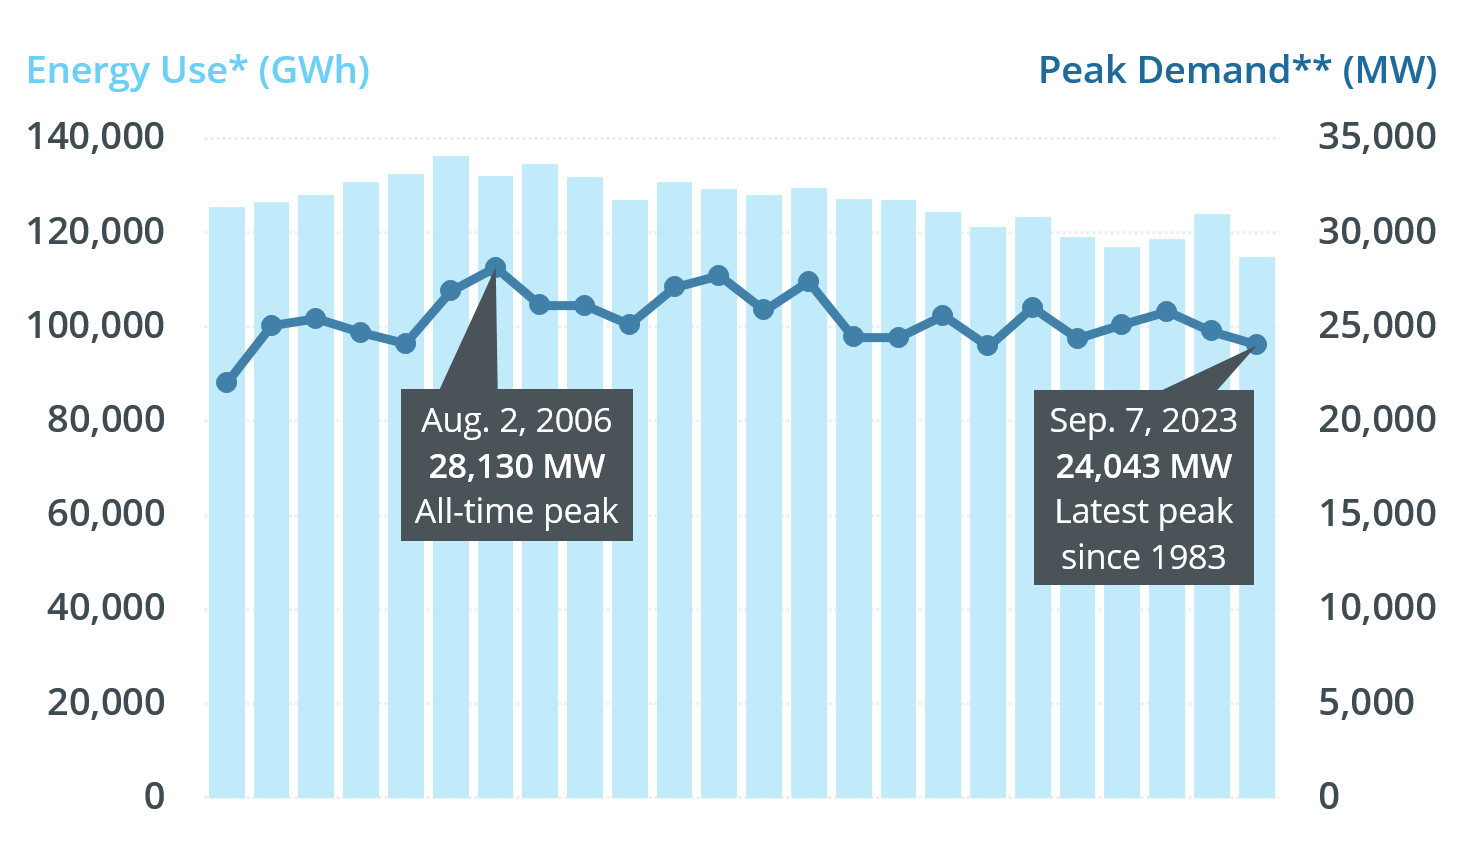 Peak demand vs. annual energy use